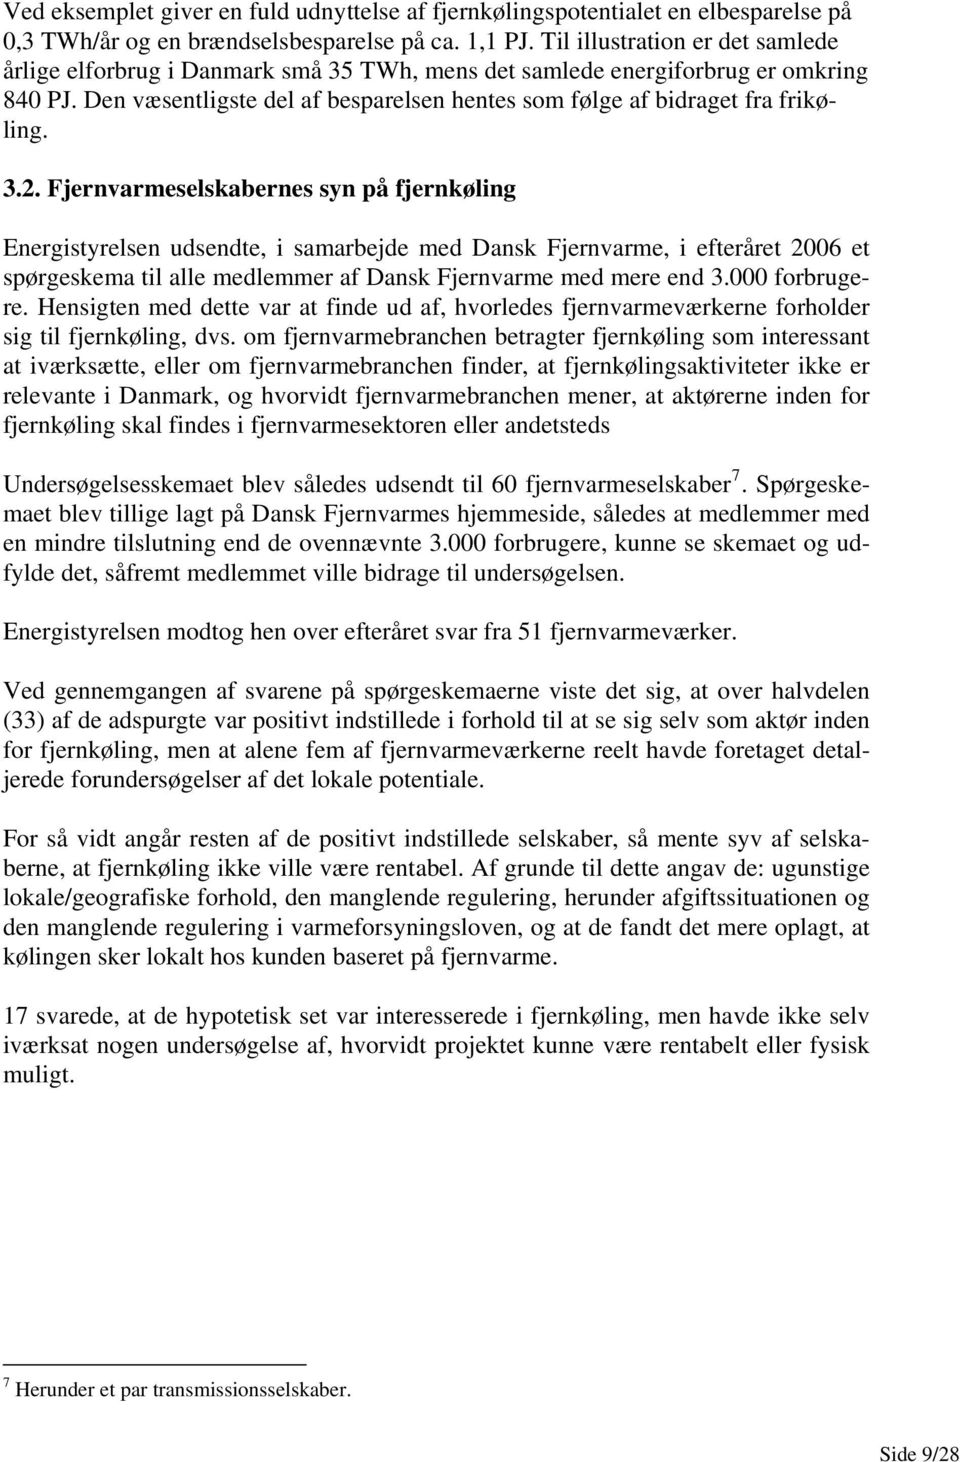 3.2. Fjernvarmeselskabernes syn på fjernkøling Energistyrelsen udsendte, i samarbejde med Dansk Fjernvarme, i efteråret 2006 et spørgeskema til alle medlemmer af Dansk Fjernvarme med mere end 3.